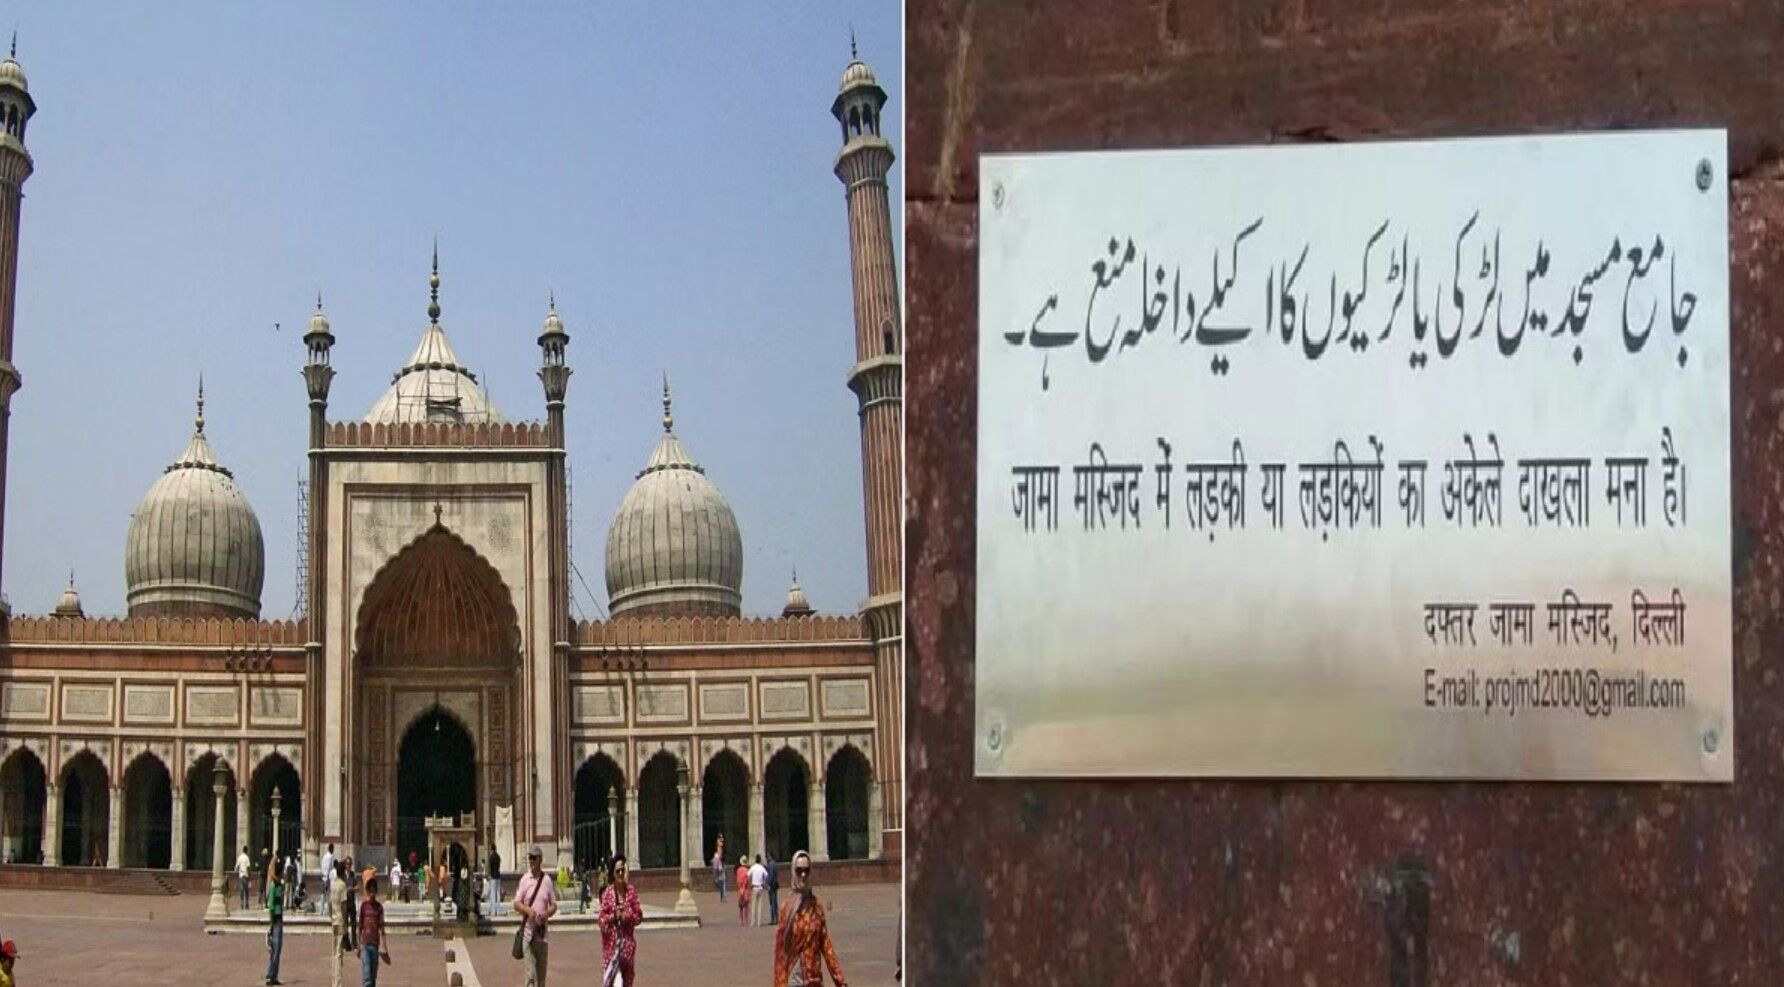 Jama Masjid  News: राज्यपाल ने की शाही इमाम बुखारी से चर्चा, जामा मस्जिद में प्रवेश कर सकेंगी महिलाएं